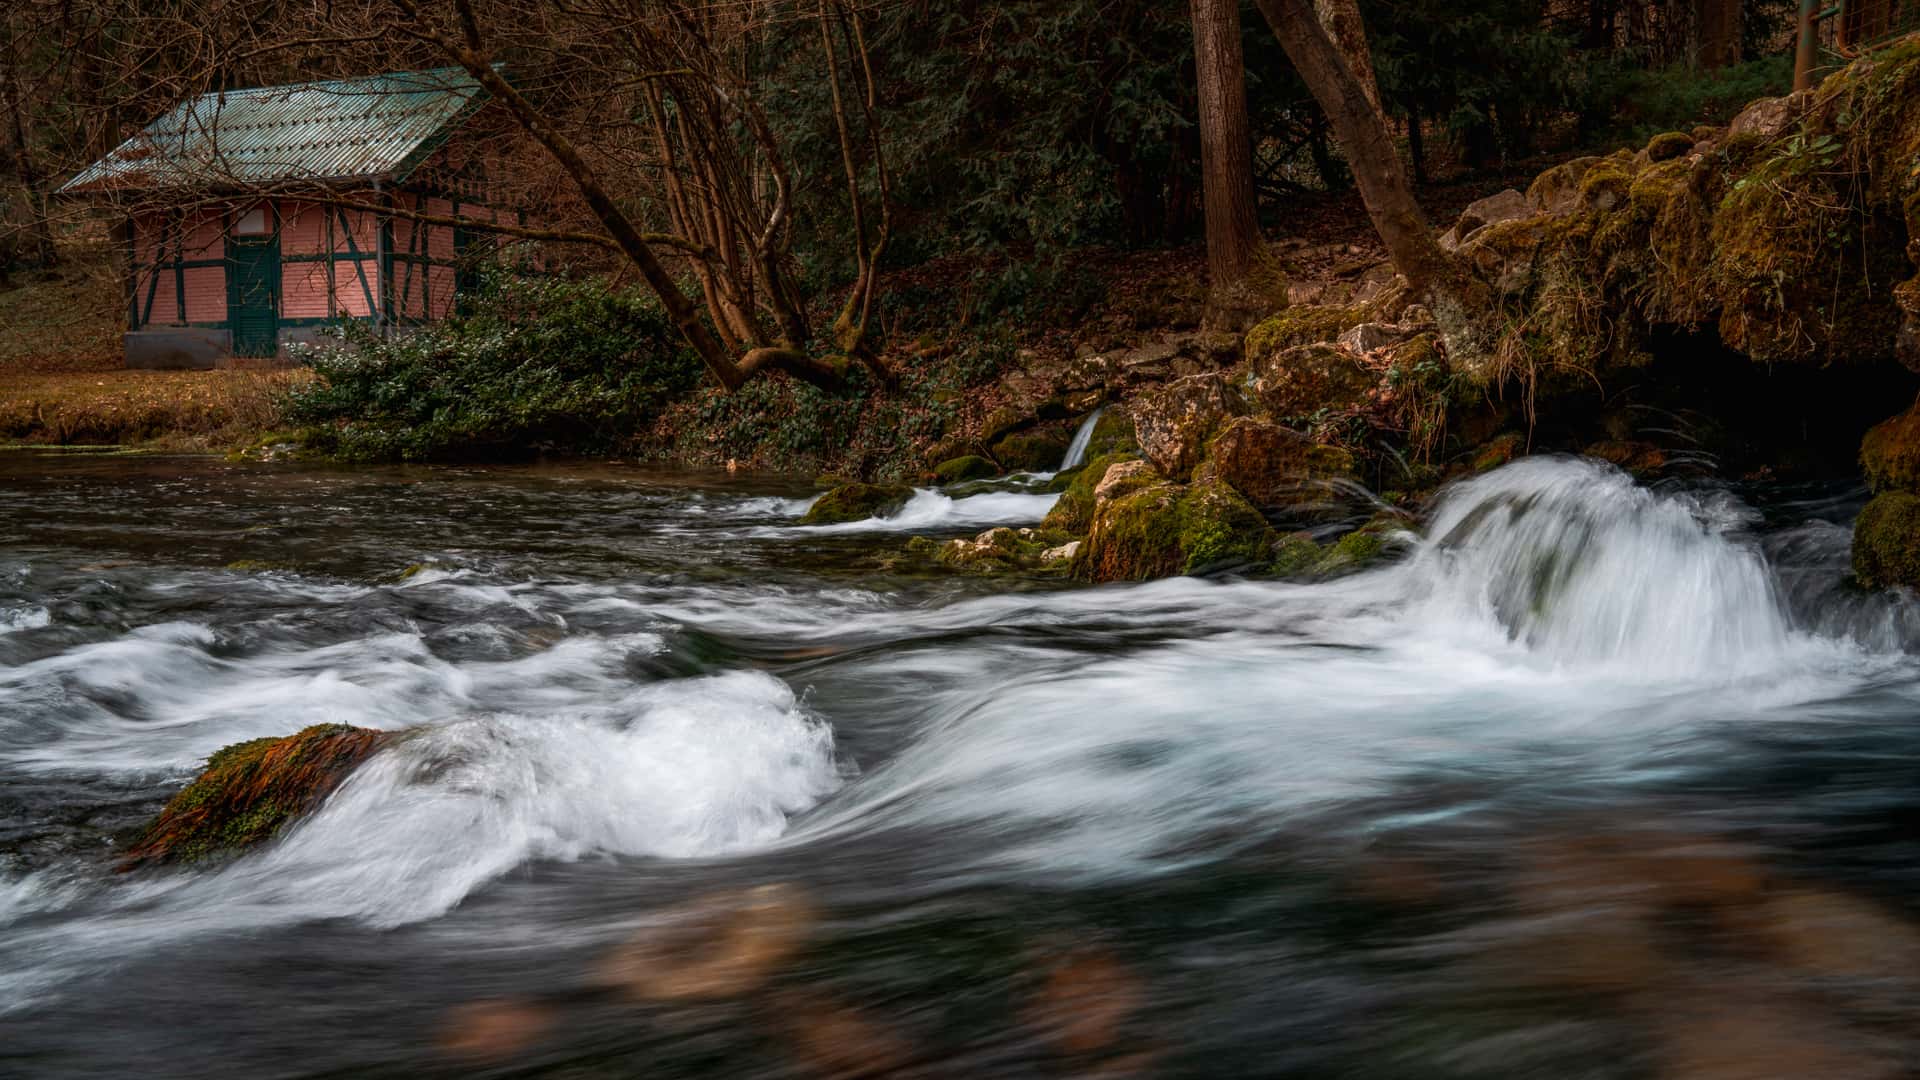 Pequeña cabaña en el bosque junto a un río con rápidas corrientes, susceptible aprovecharse de una instalación de energía hidráulica doméstica